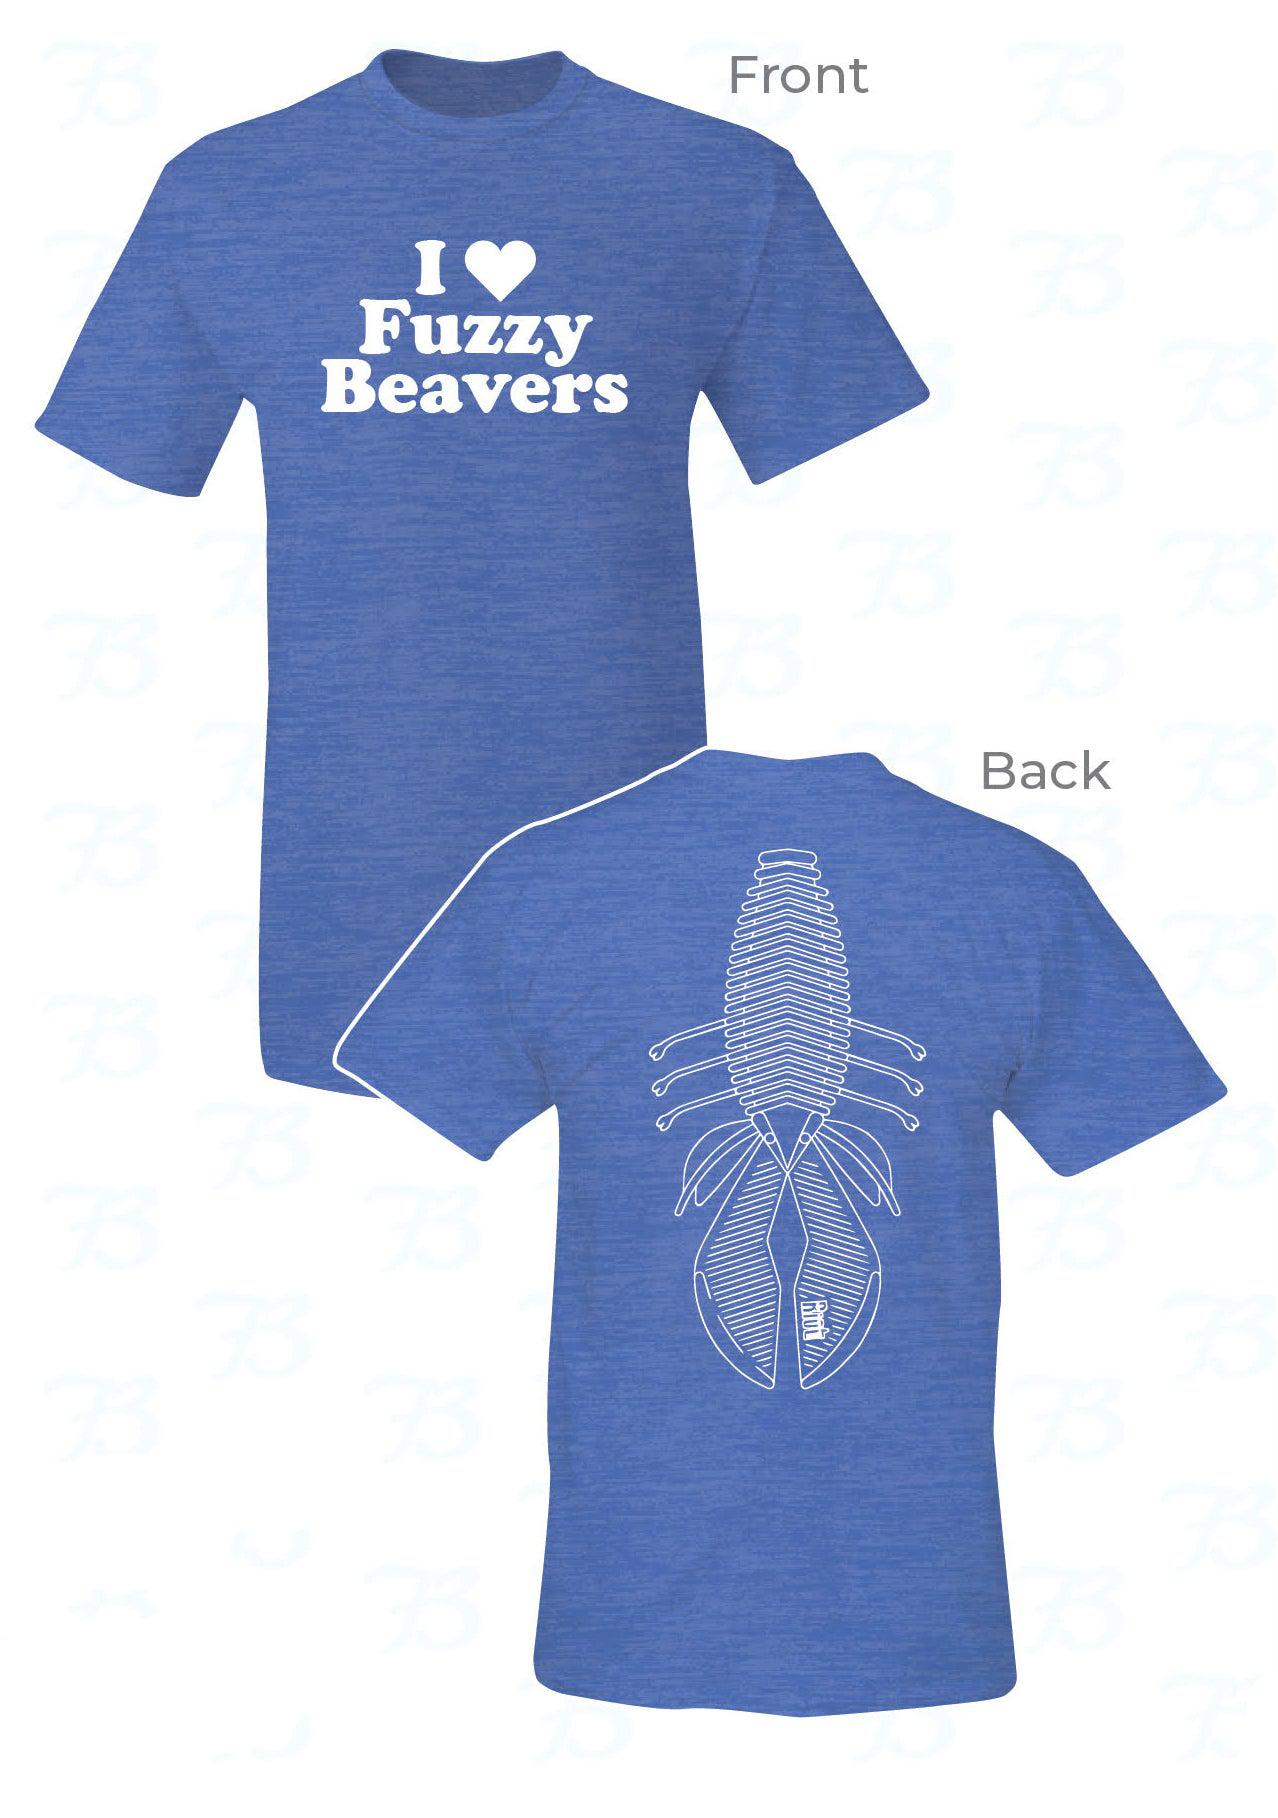 I love fuzzy beavers (t-shirt)